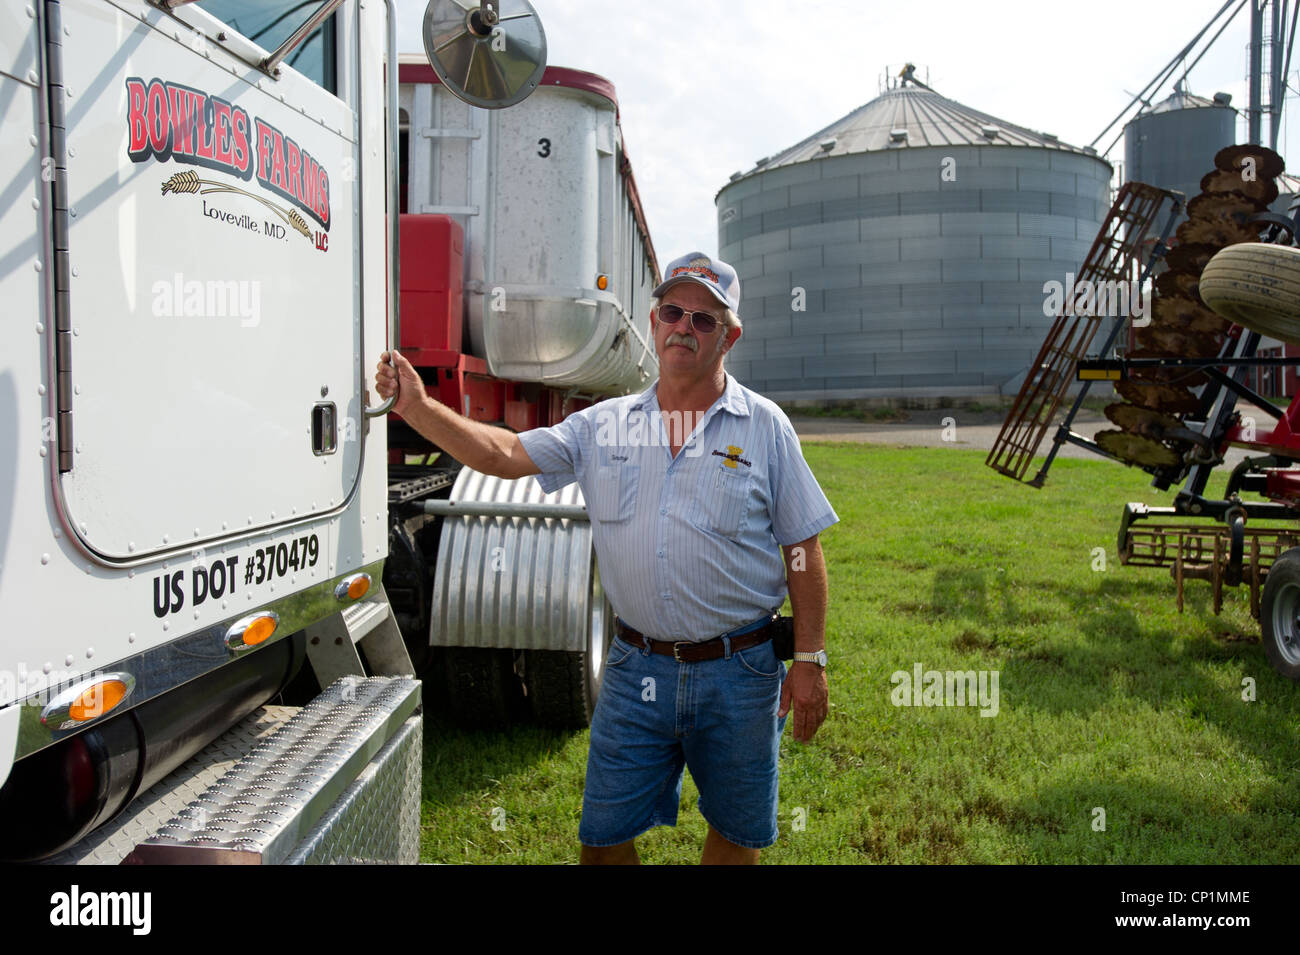 Agriculteur producteur de grain par debout sur son camion farm Banque D'Images